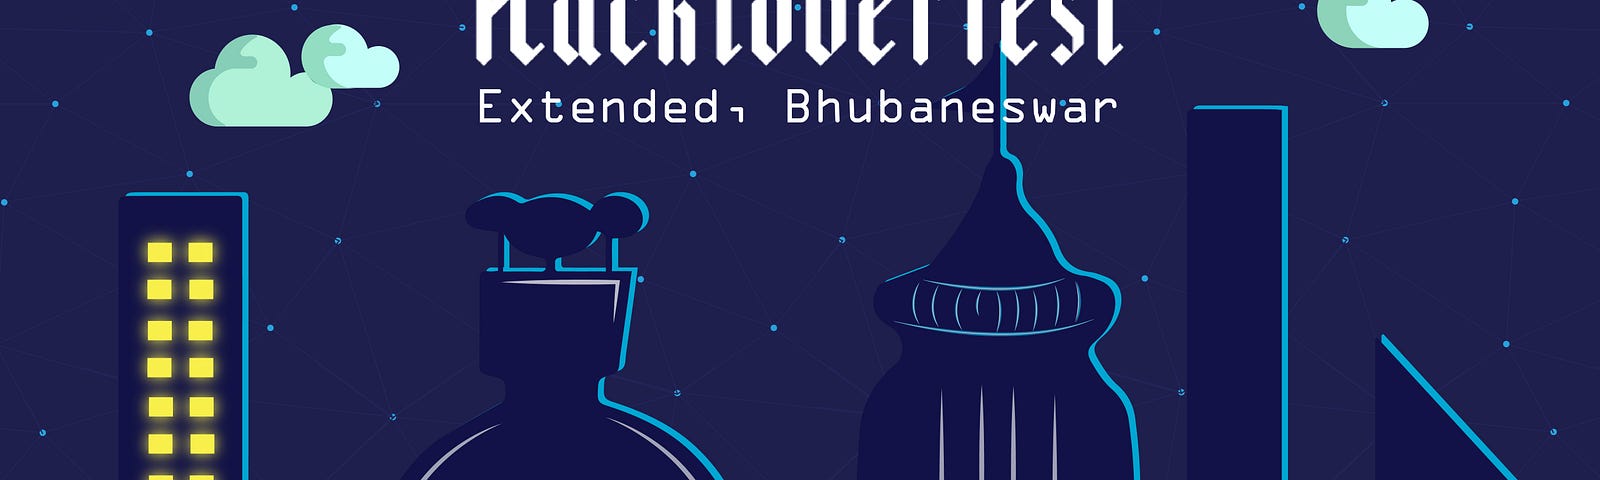 Cover image of Hacktoberfest Extended Bhubaneswar Organized by Emisha Community